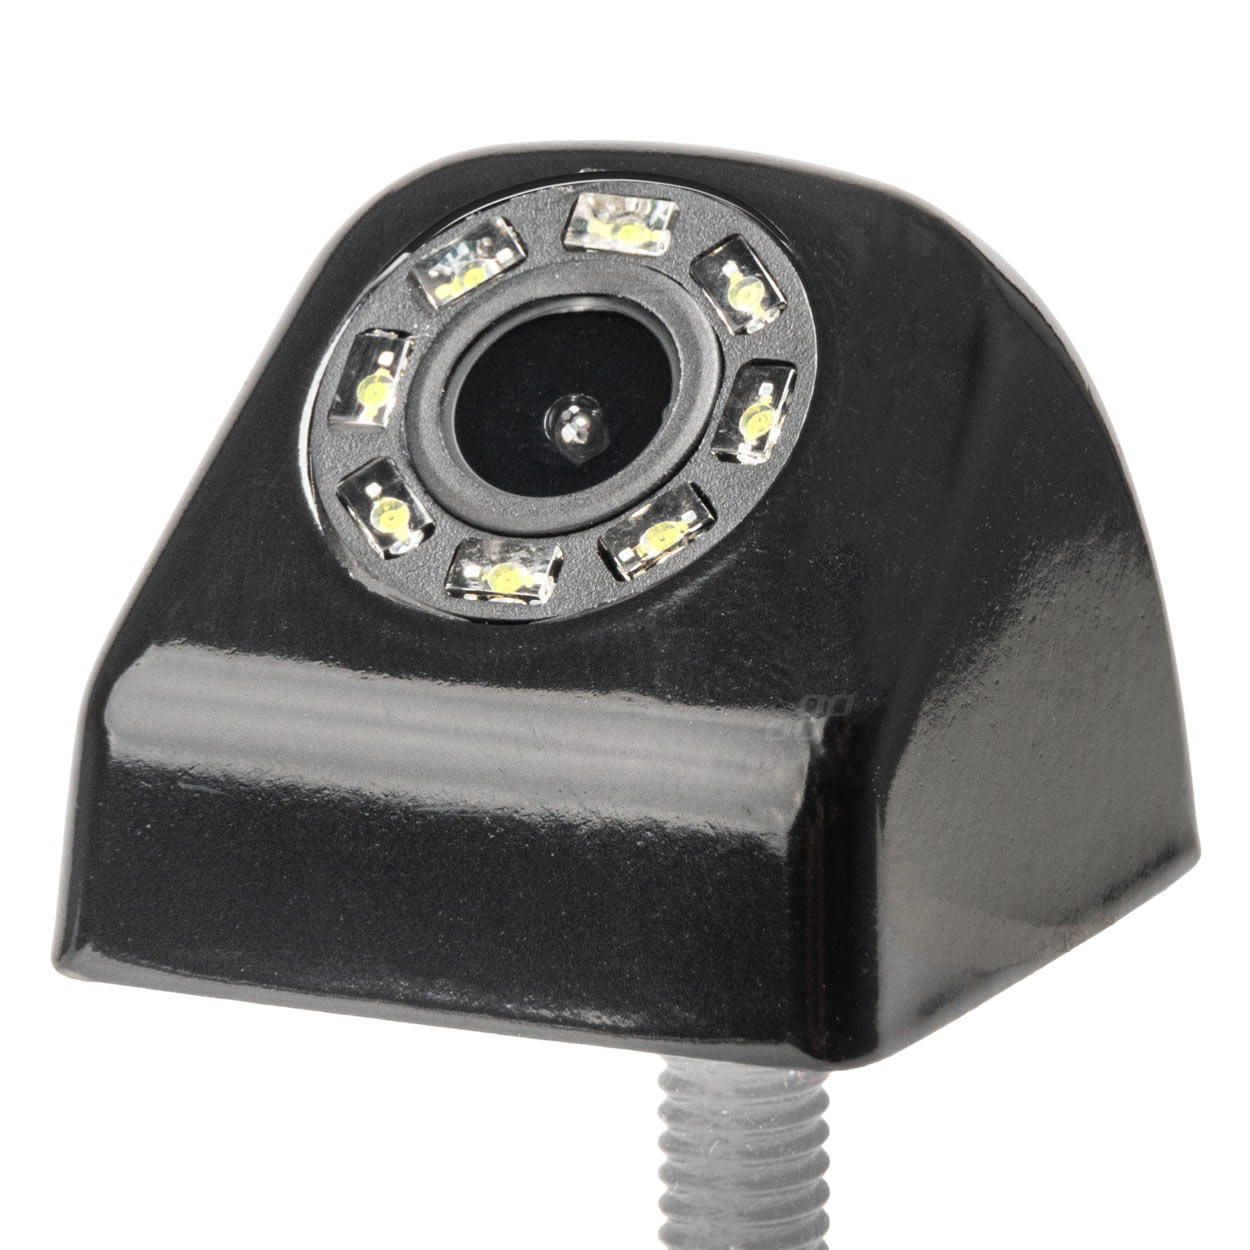 Couvací kamera HD-310 LED 12v 720p AMIO-03530